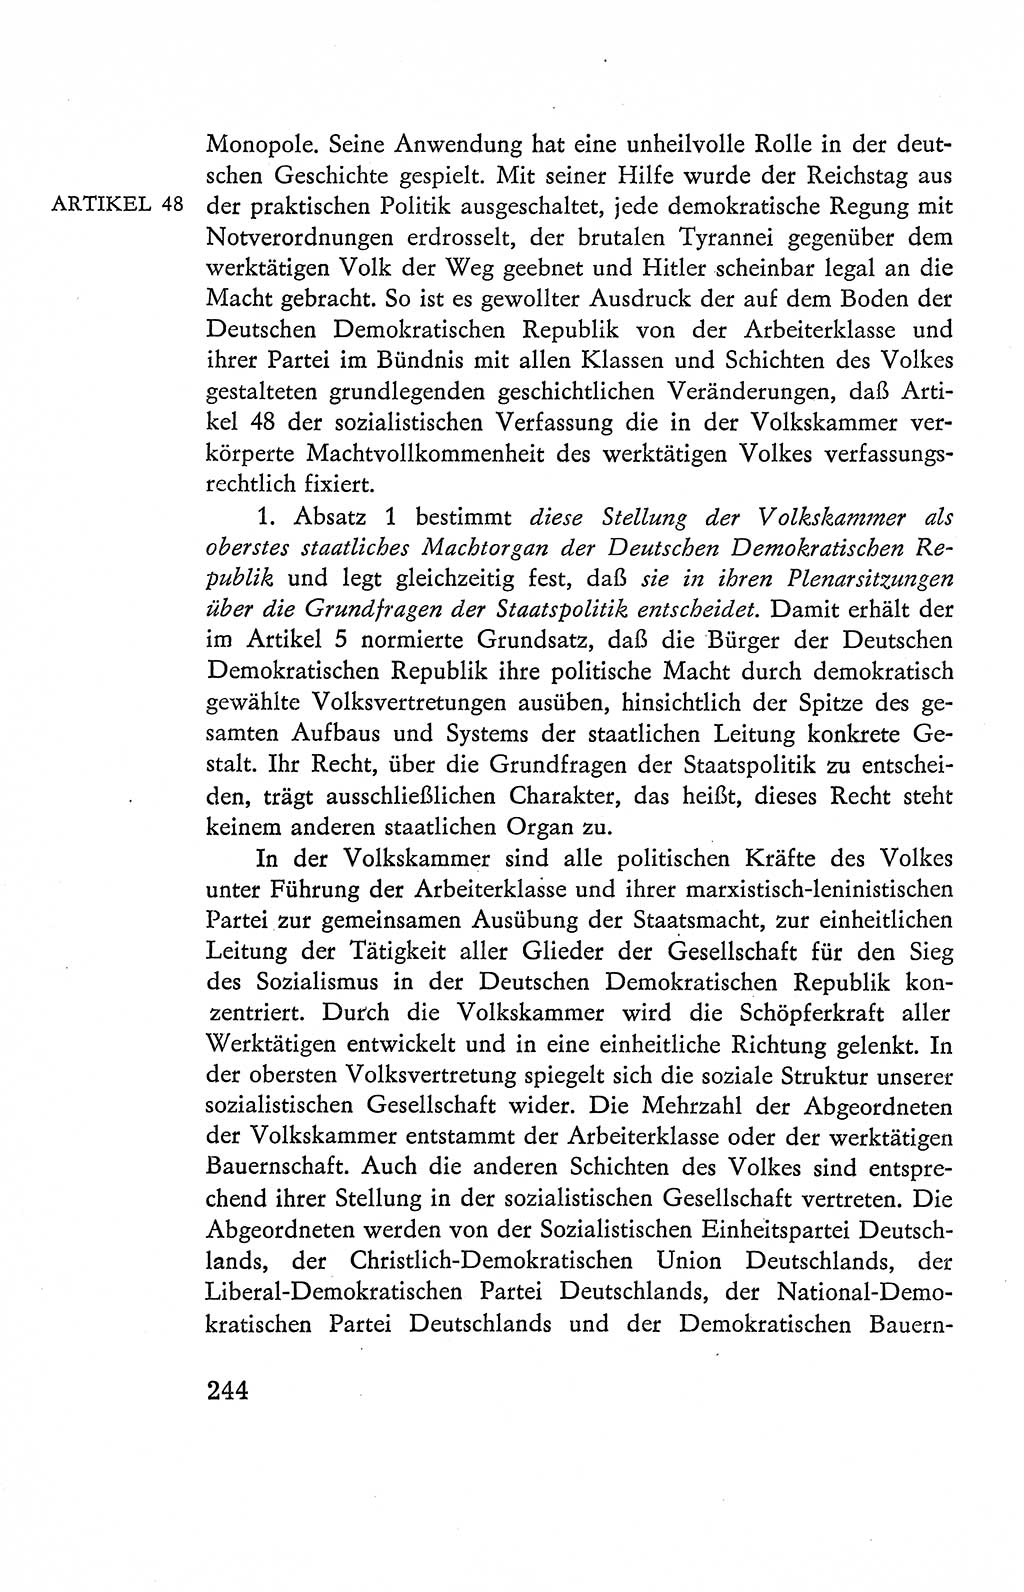 Verfassung der Deutschen Demokratischen Republik (DDR), Dokumente, Kommentar 1969, Band 2, Seite 244 (Verf. DDR Dok. Komm. 1969, Bd. 2, S. 244)